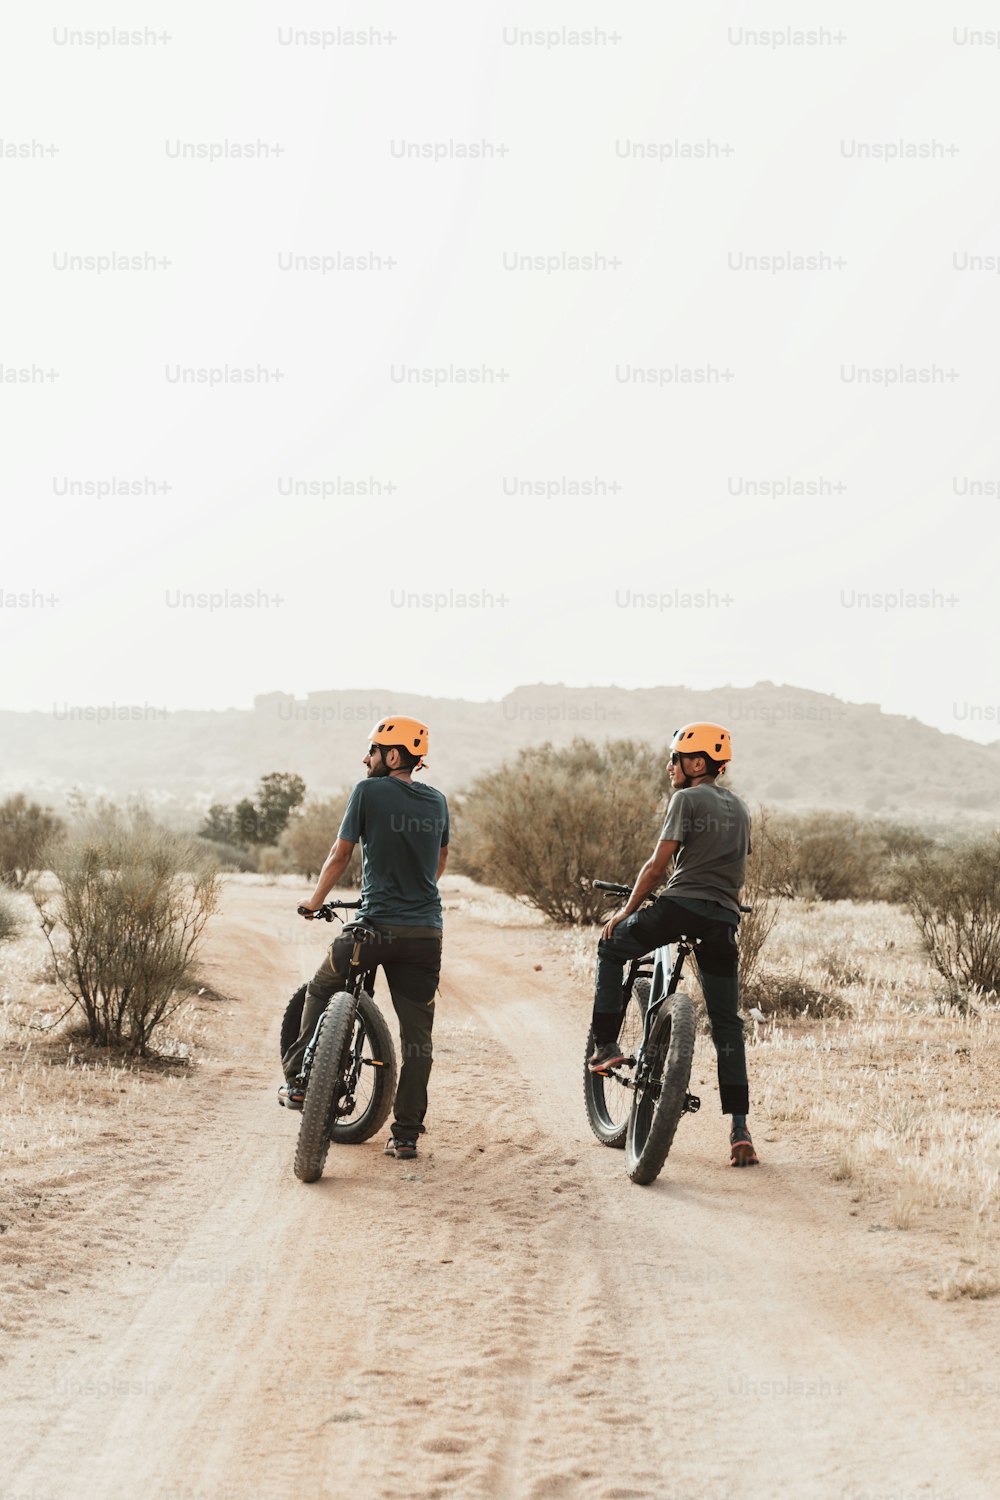 비포장 도로를 따라 자전거를 타는 두 남자